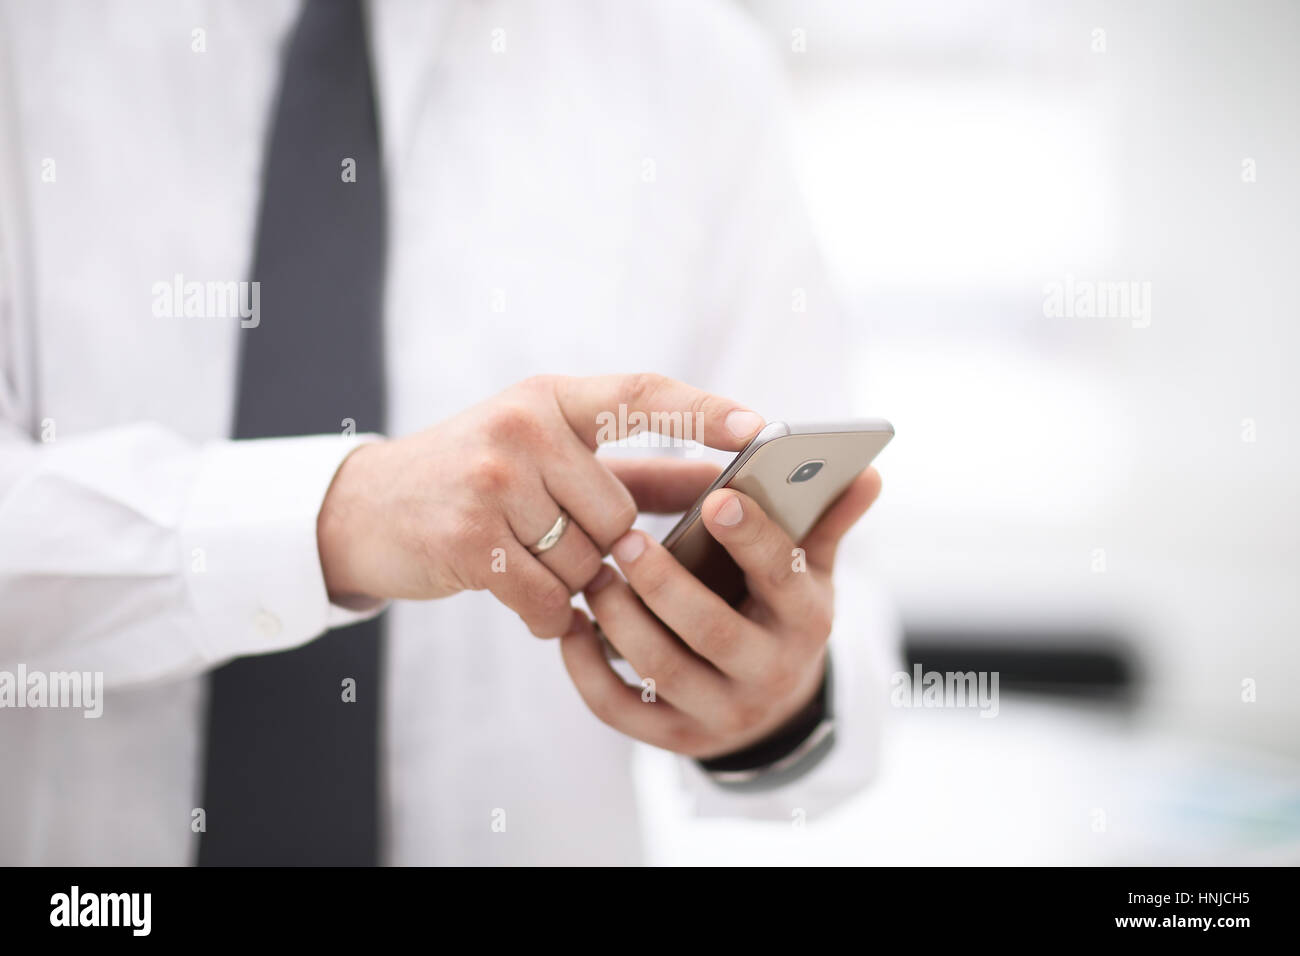 Maquette d'un dispositif de fixation et l'homme de toucher de l'écran Téléphone Banque D'Images